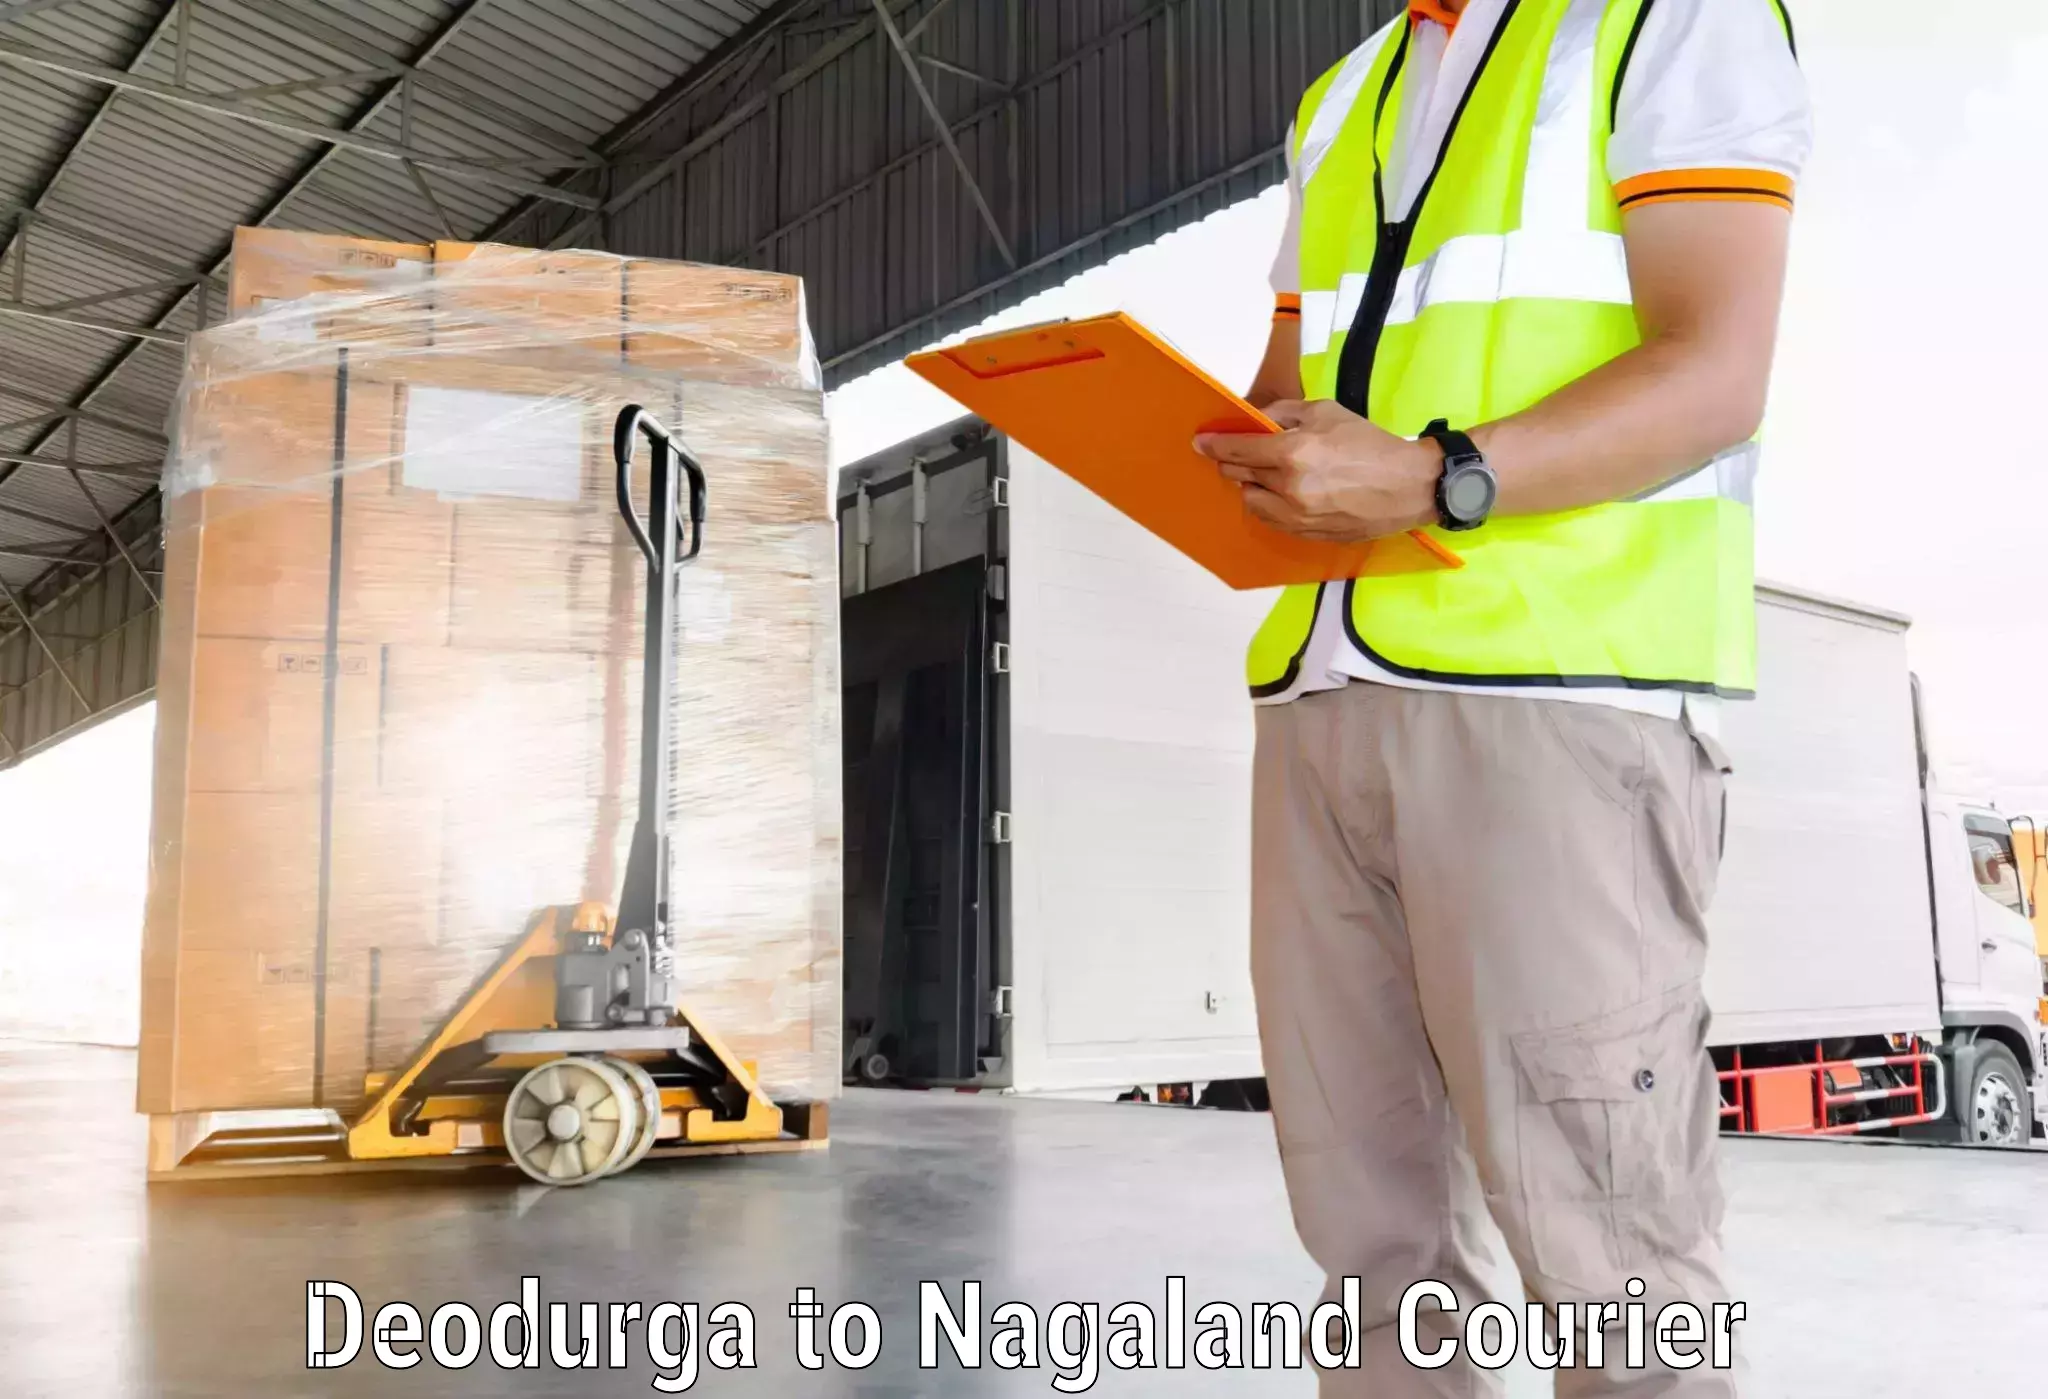 Modern courier technology Deodurga to Kohima